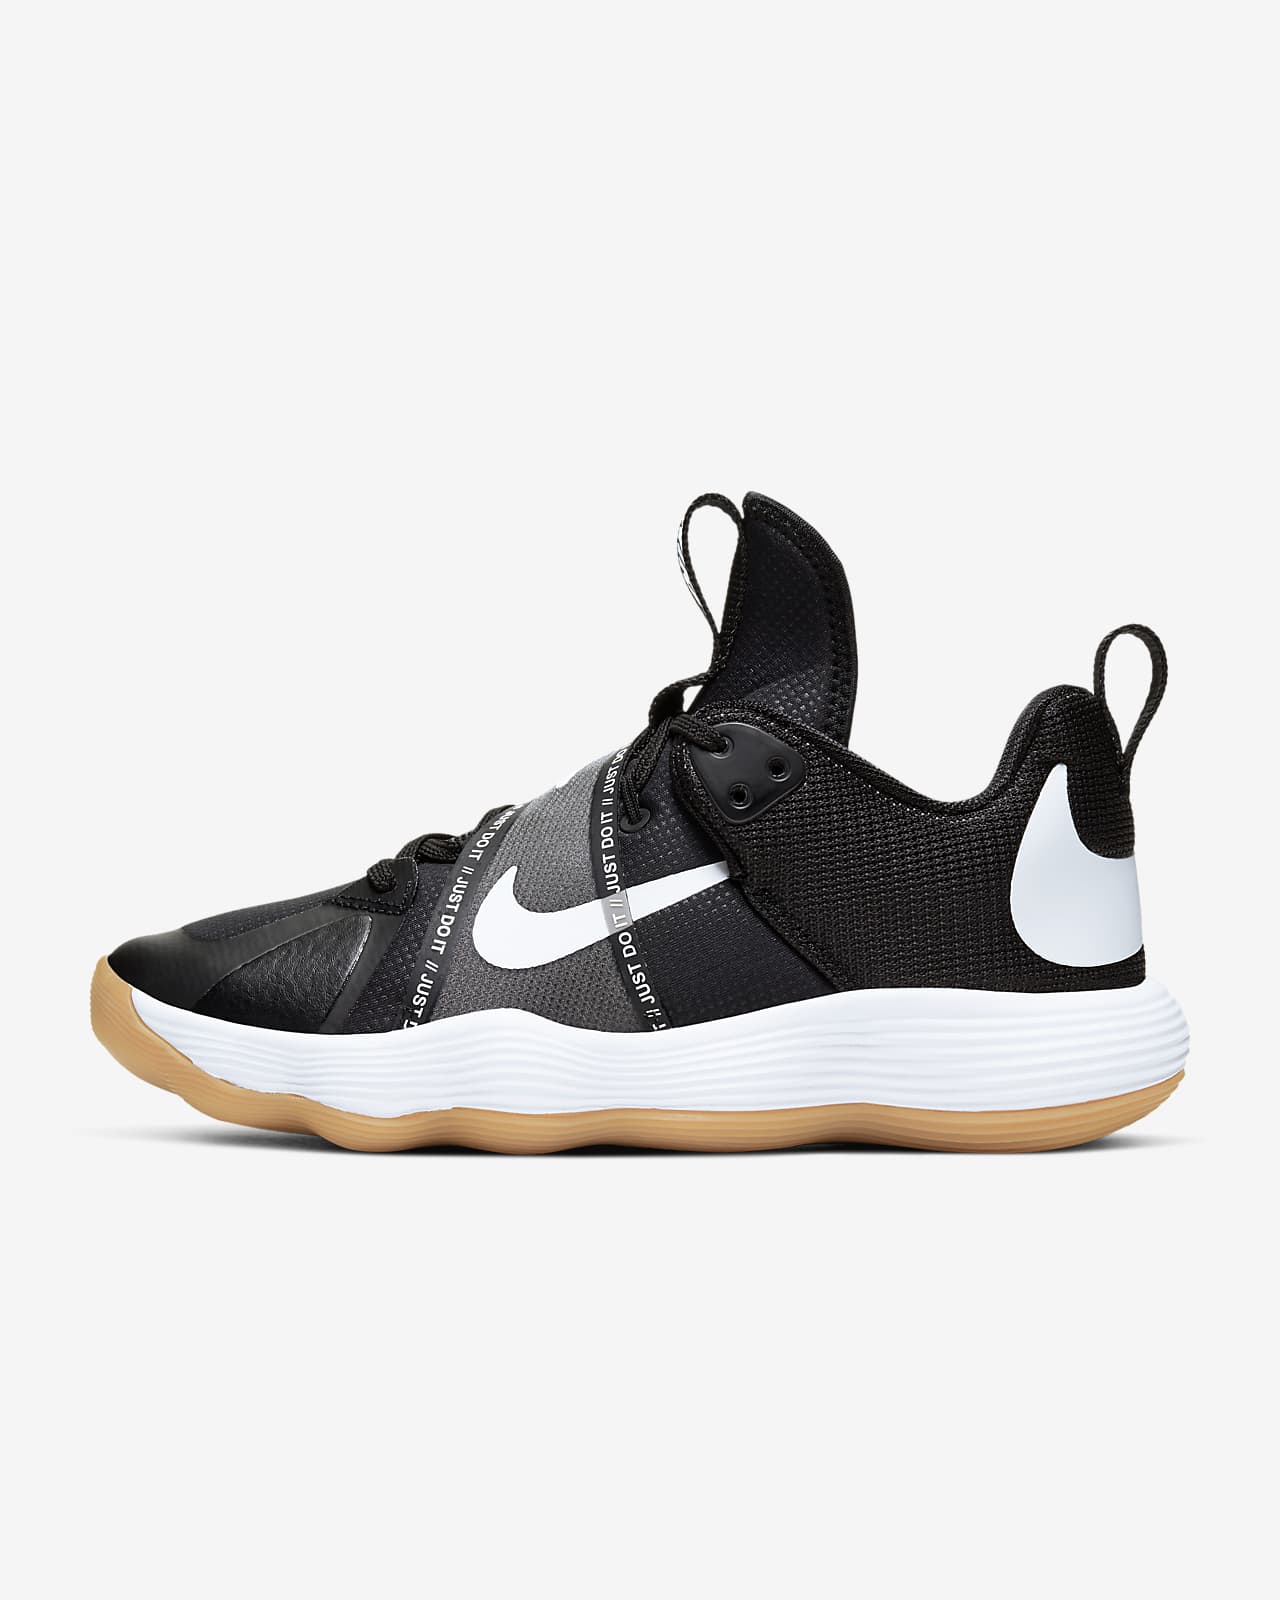 Nike React HyperSet Indoor-Court-Schuh